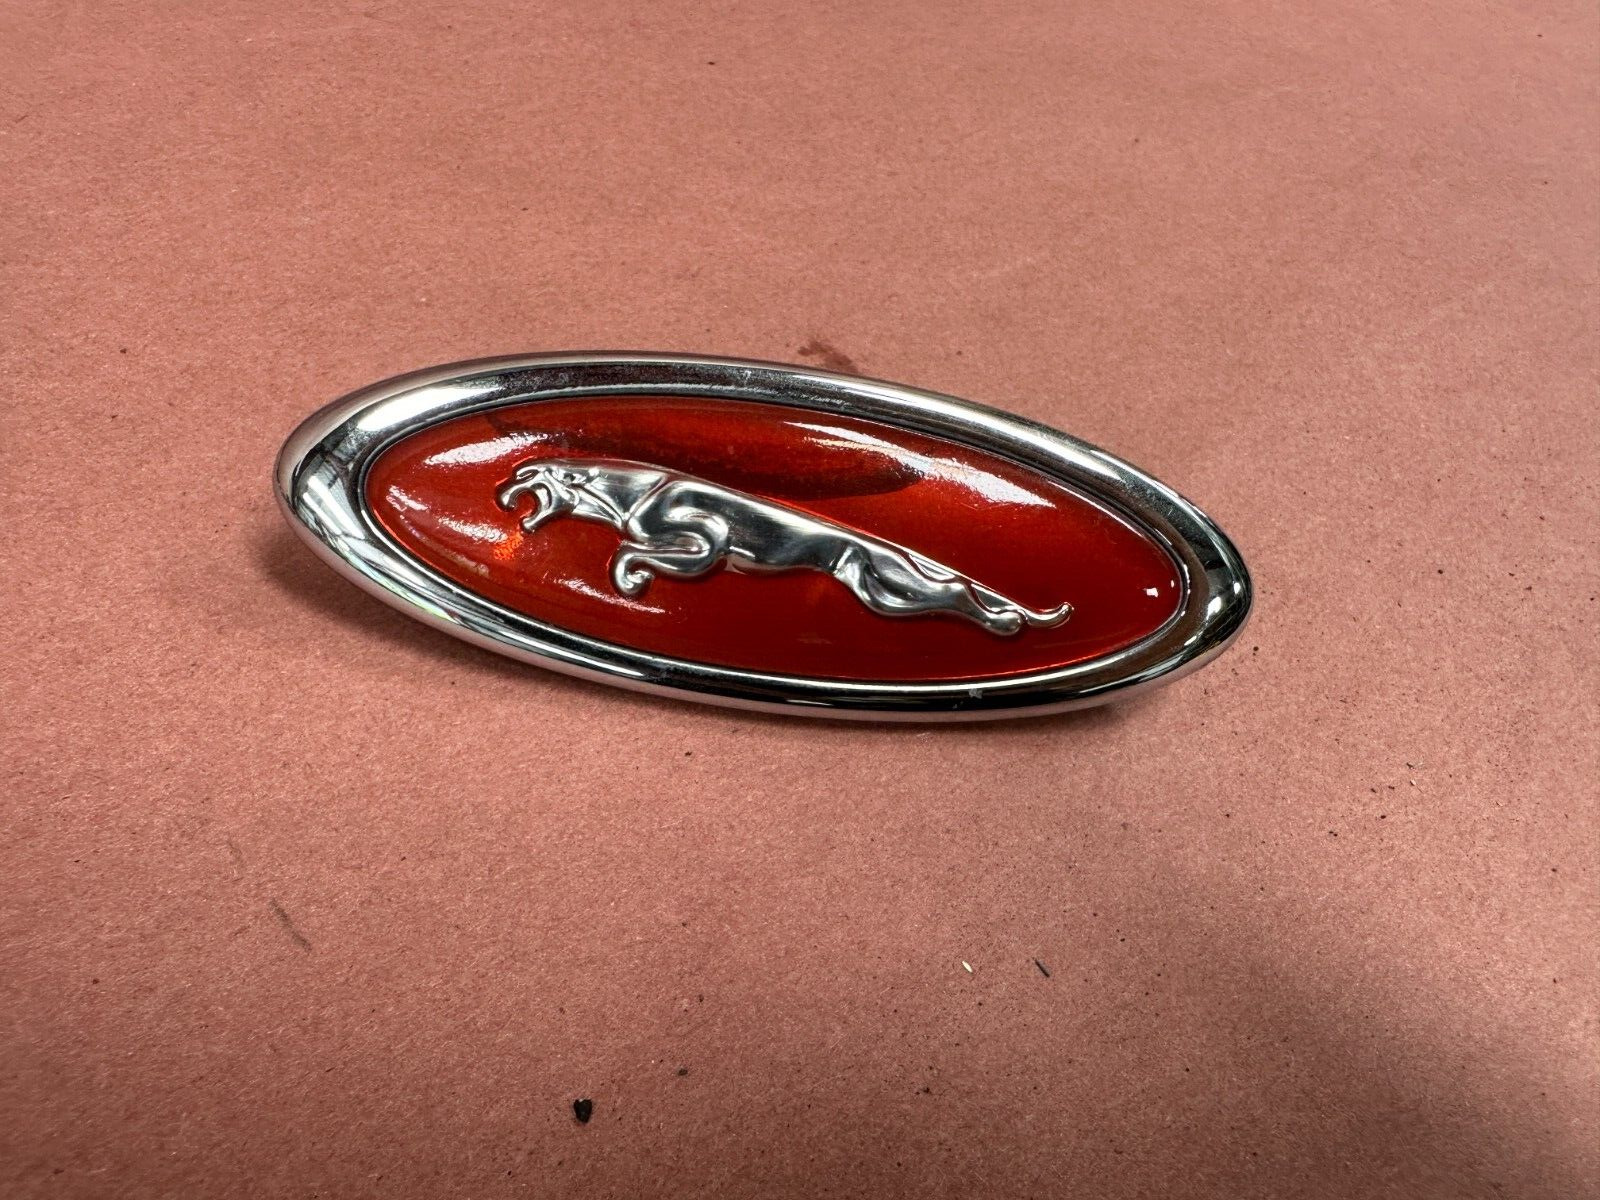 Jaguar XKR Front Left Fender Wing Logo Emblem Badge OEM 86K Miles